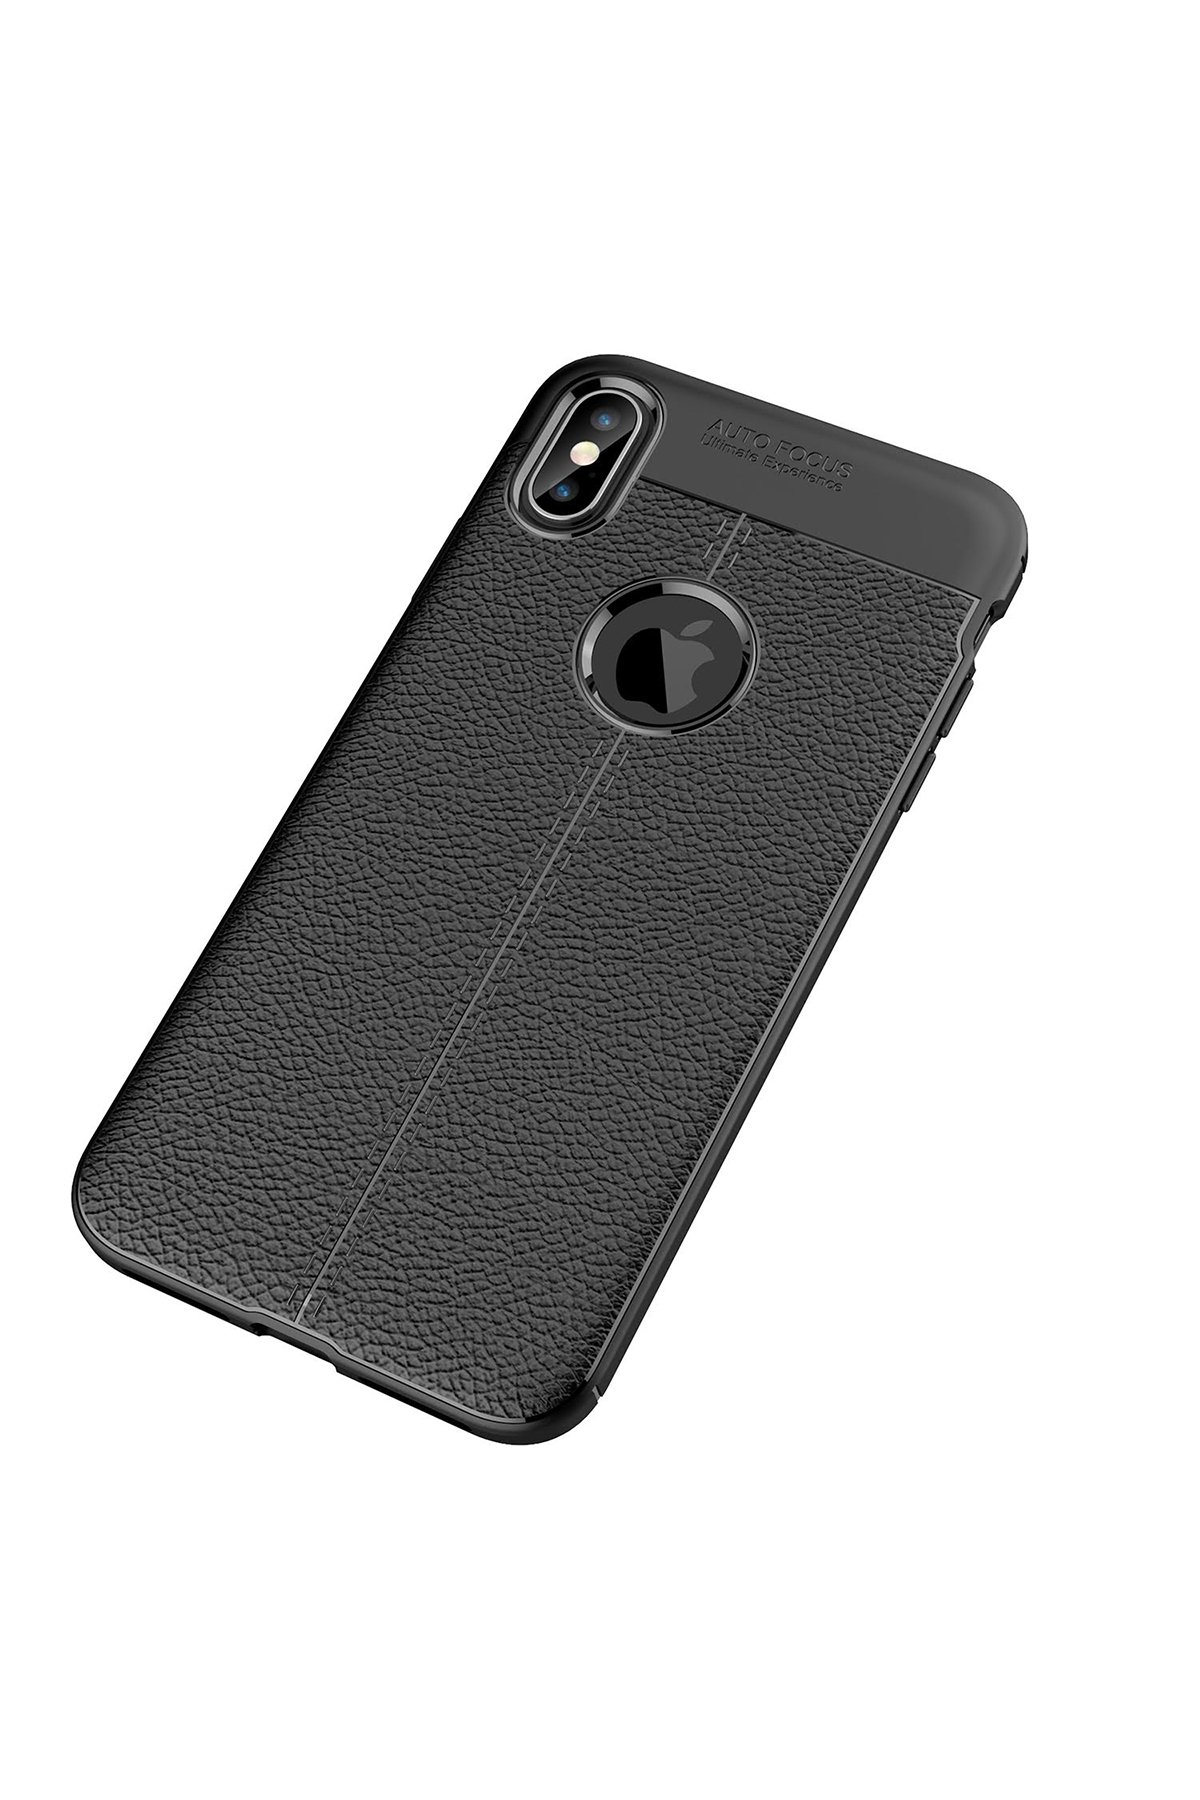 Newface iPhone XS Max Kılıf İkon Silikon - Siyah